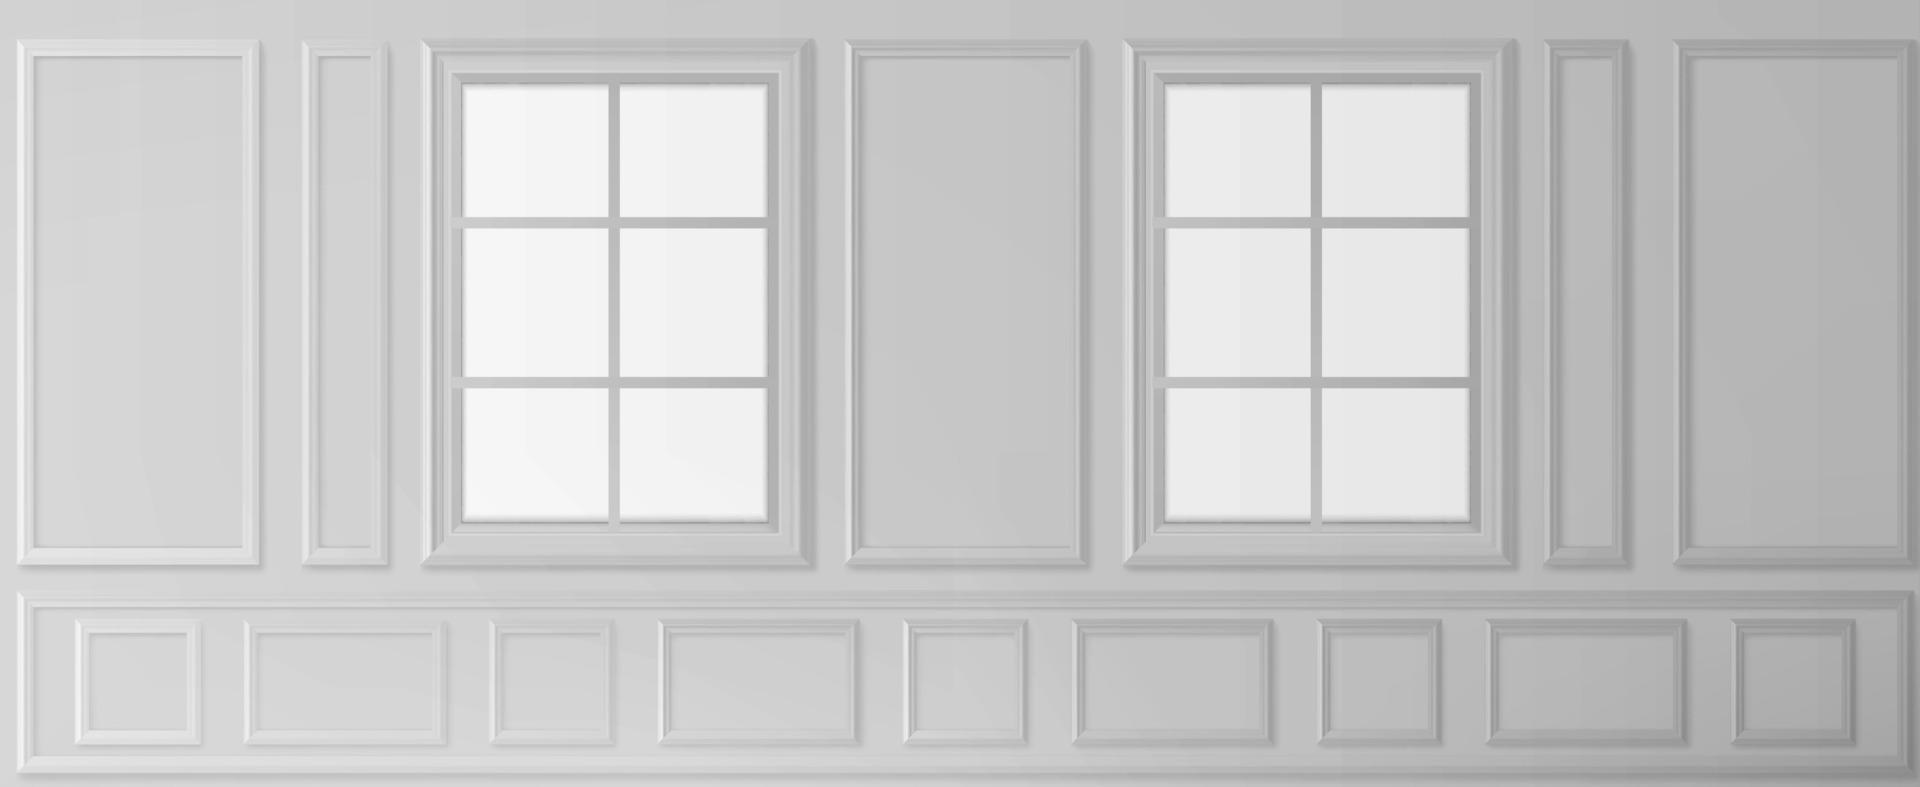 pared blanca con ventanas de estilo victoriano de lujo vector